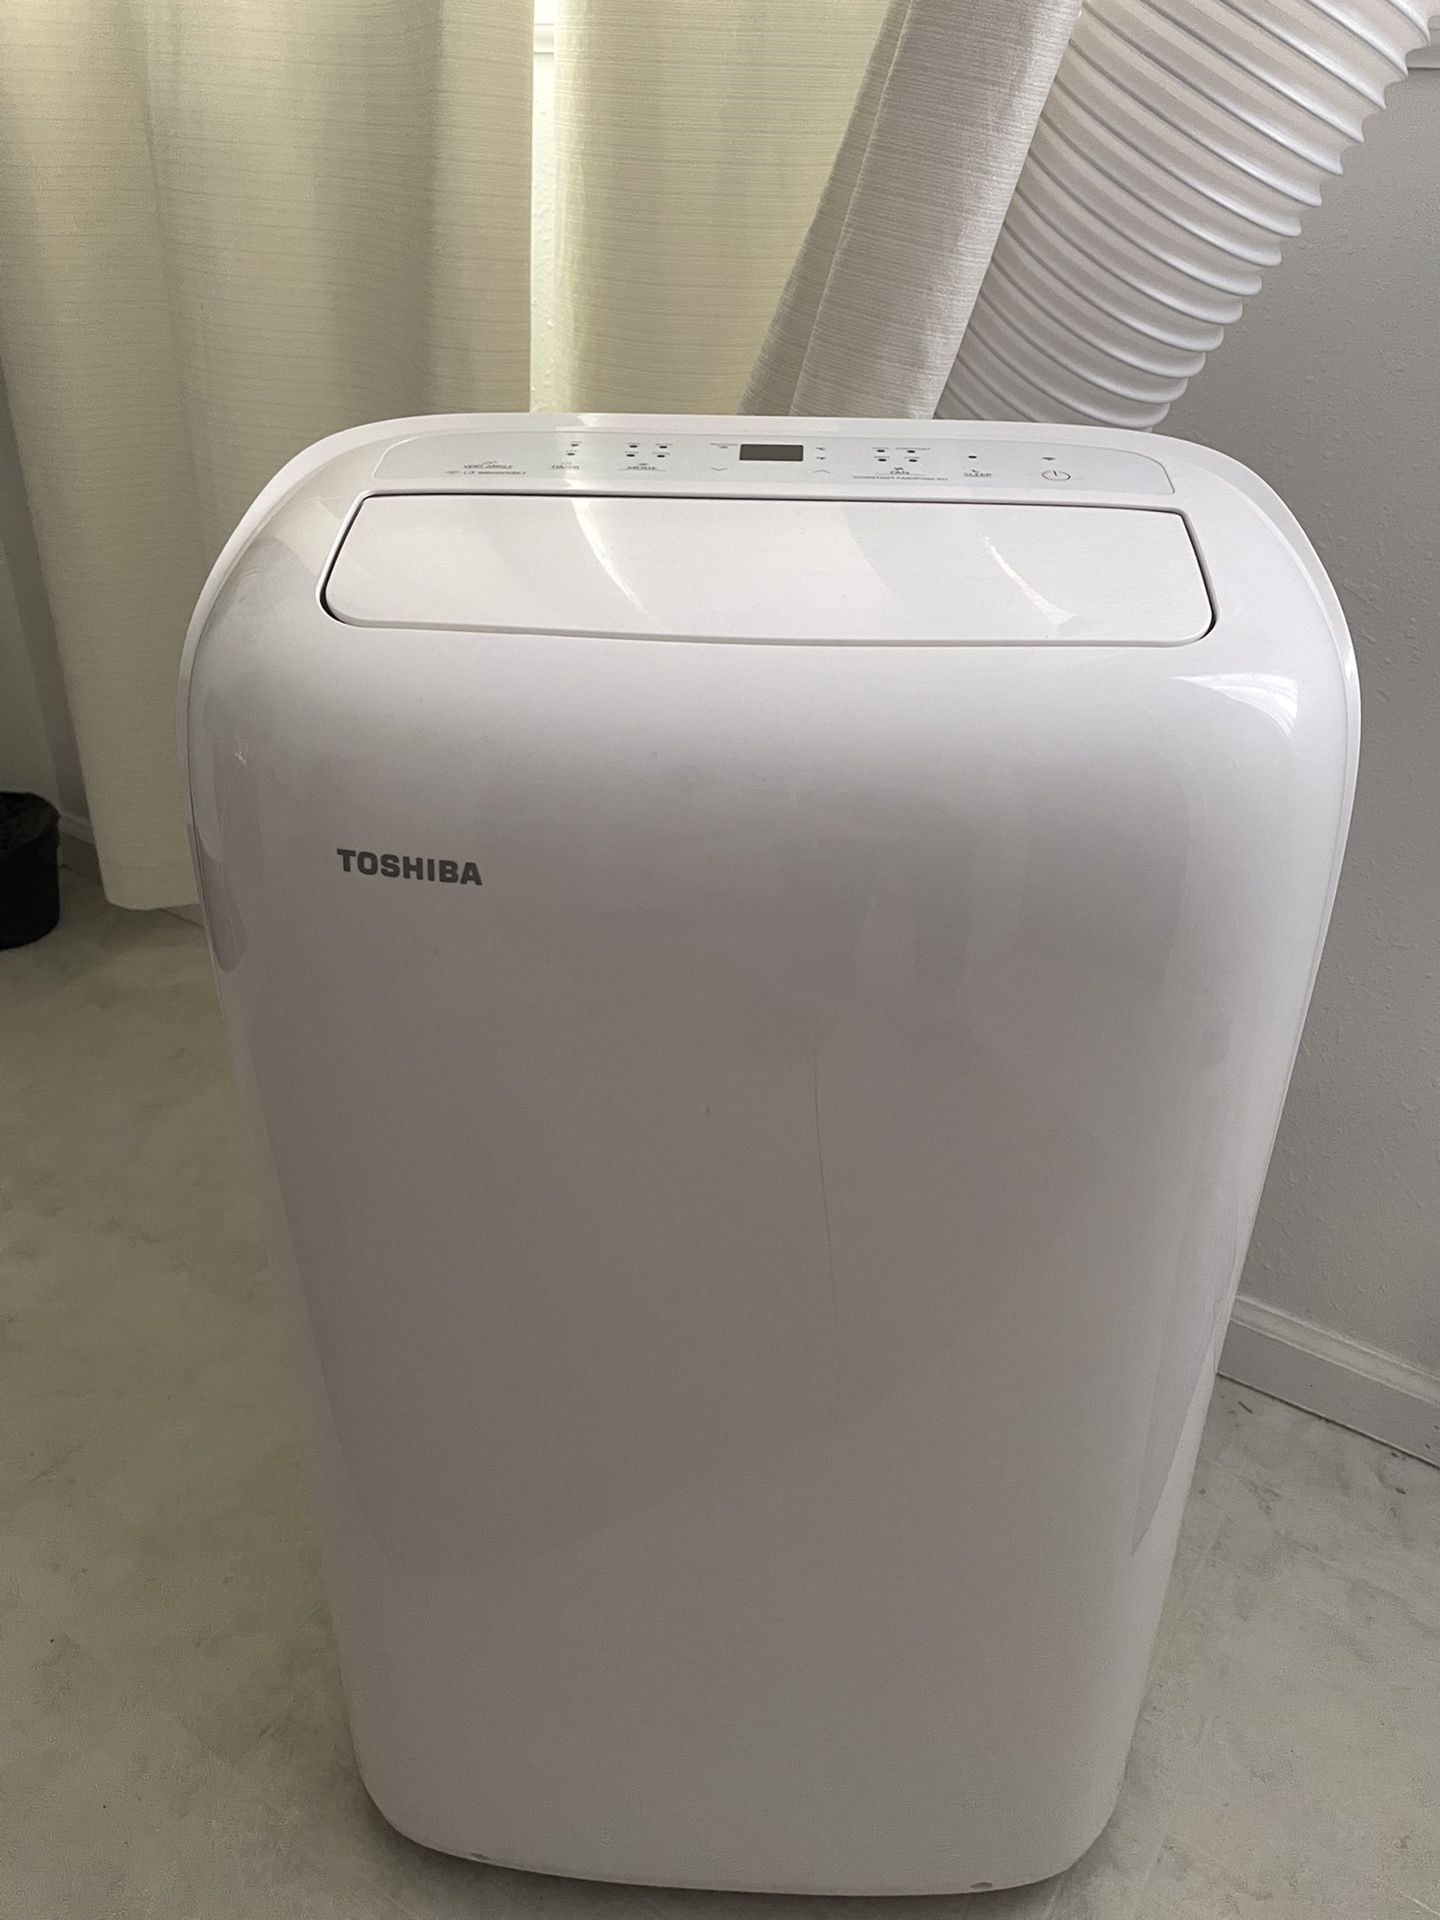 Portable A/C Air conditioner